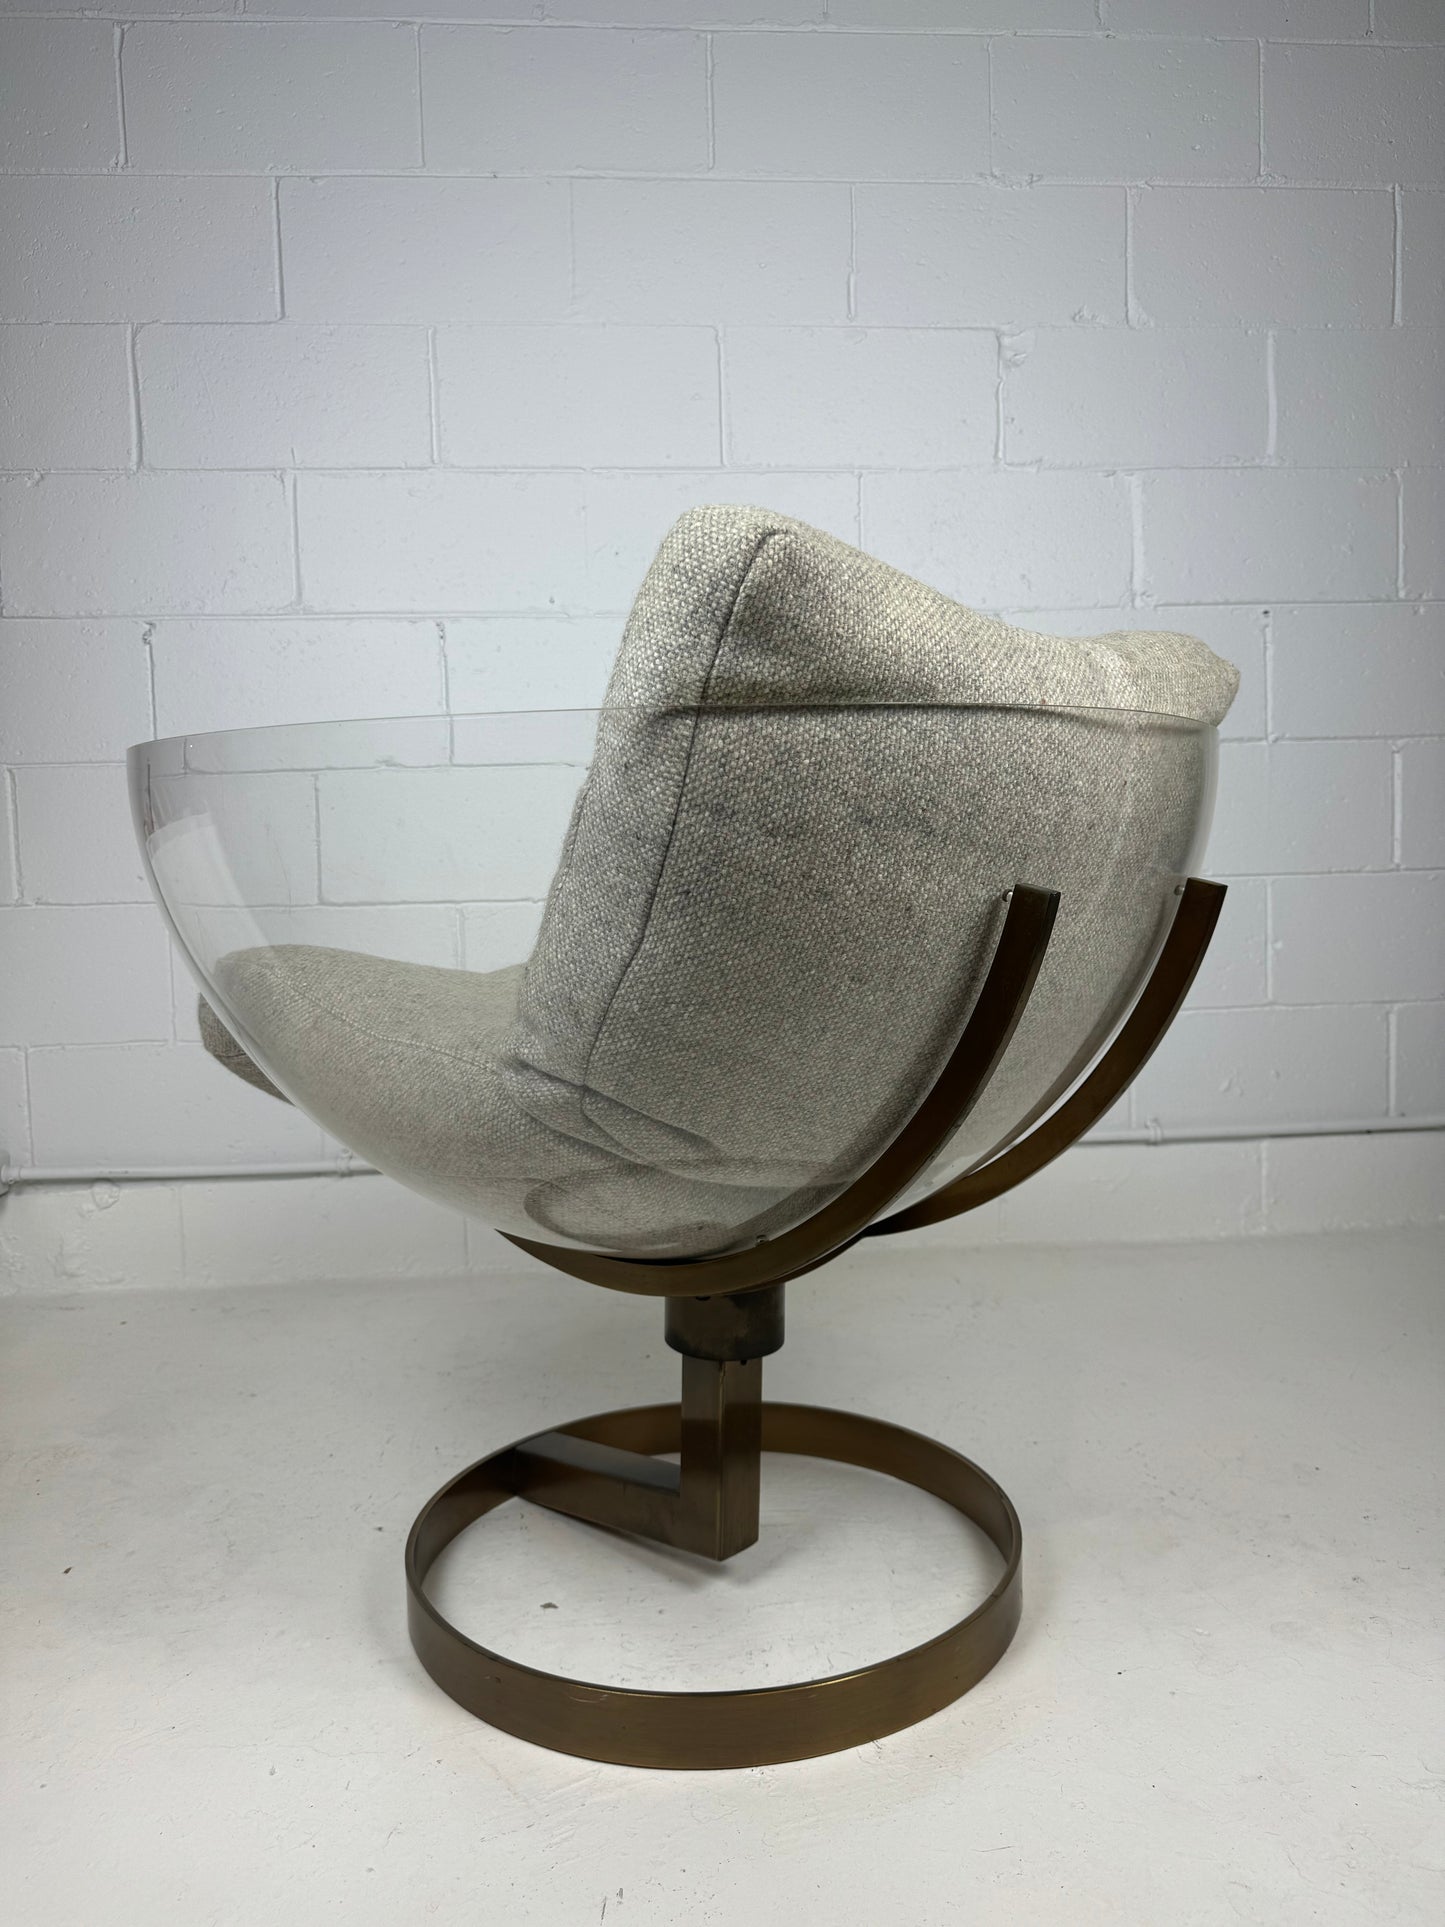 Bob Forrest "2001" Chair for L'Image Design